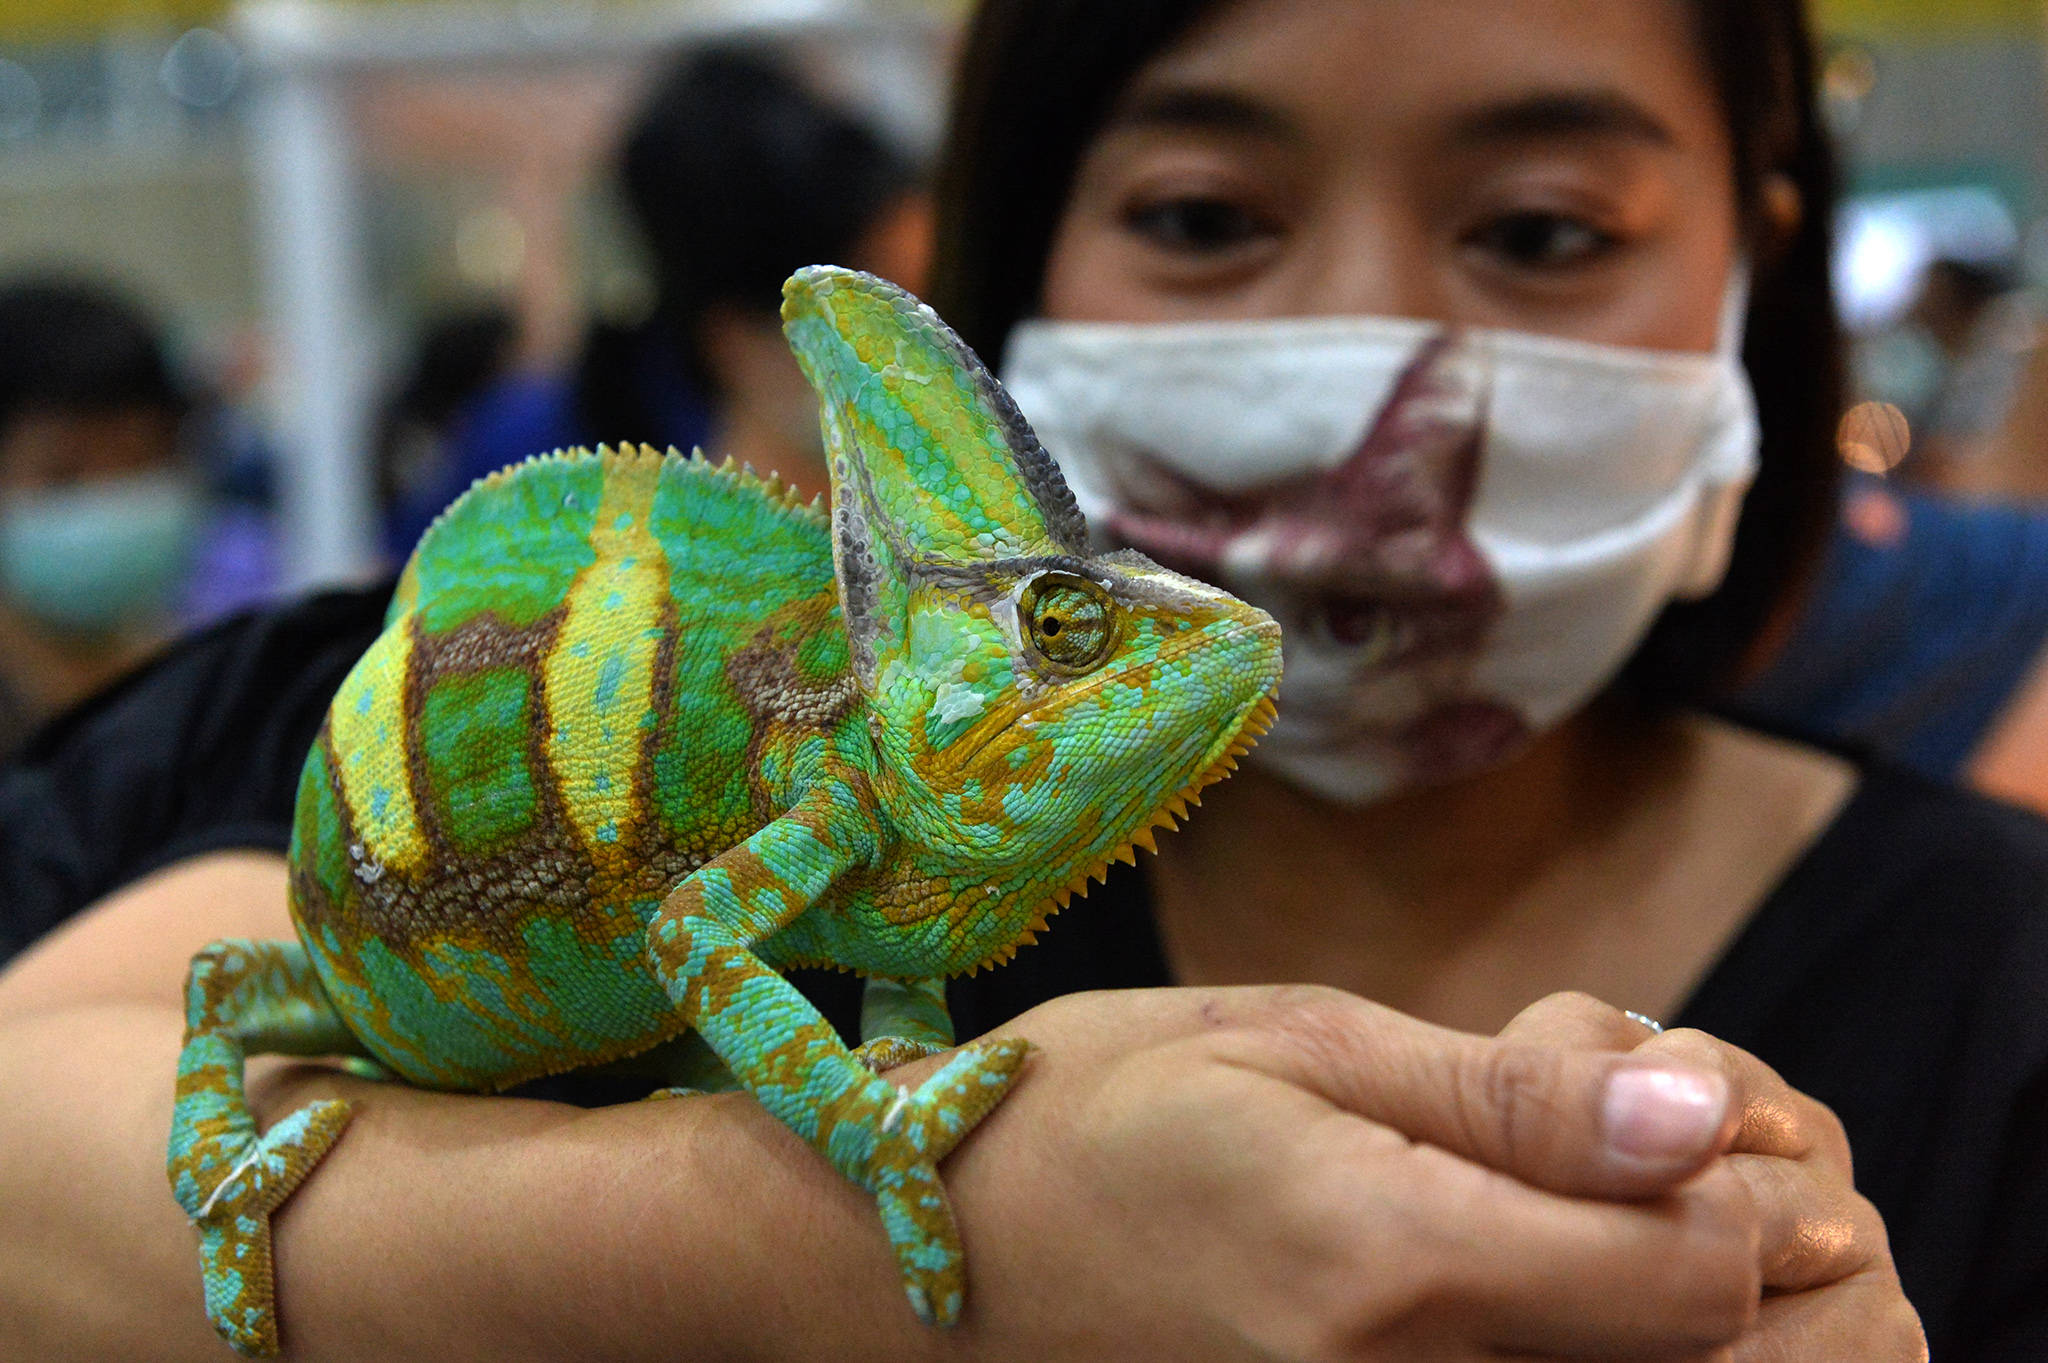 9月3日,一名女士在曼谷举行的泰国宠物博览会上展示一只高冠变色龙.